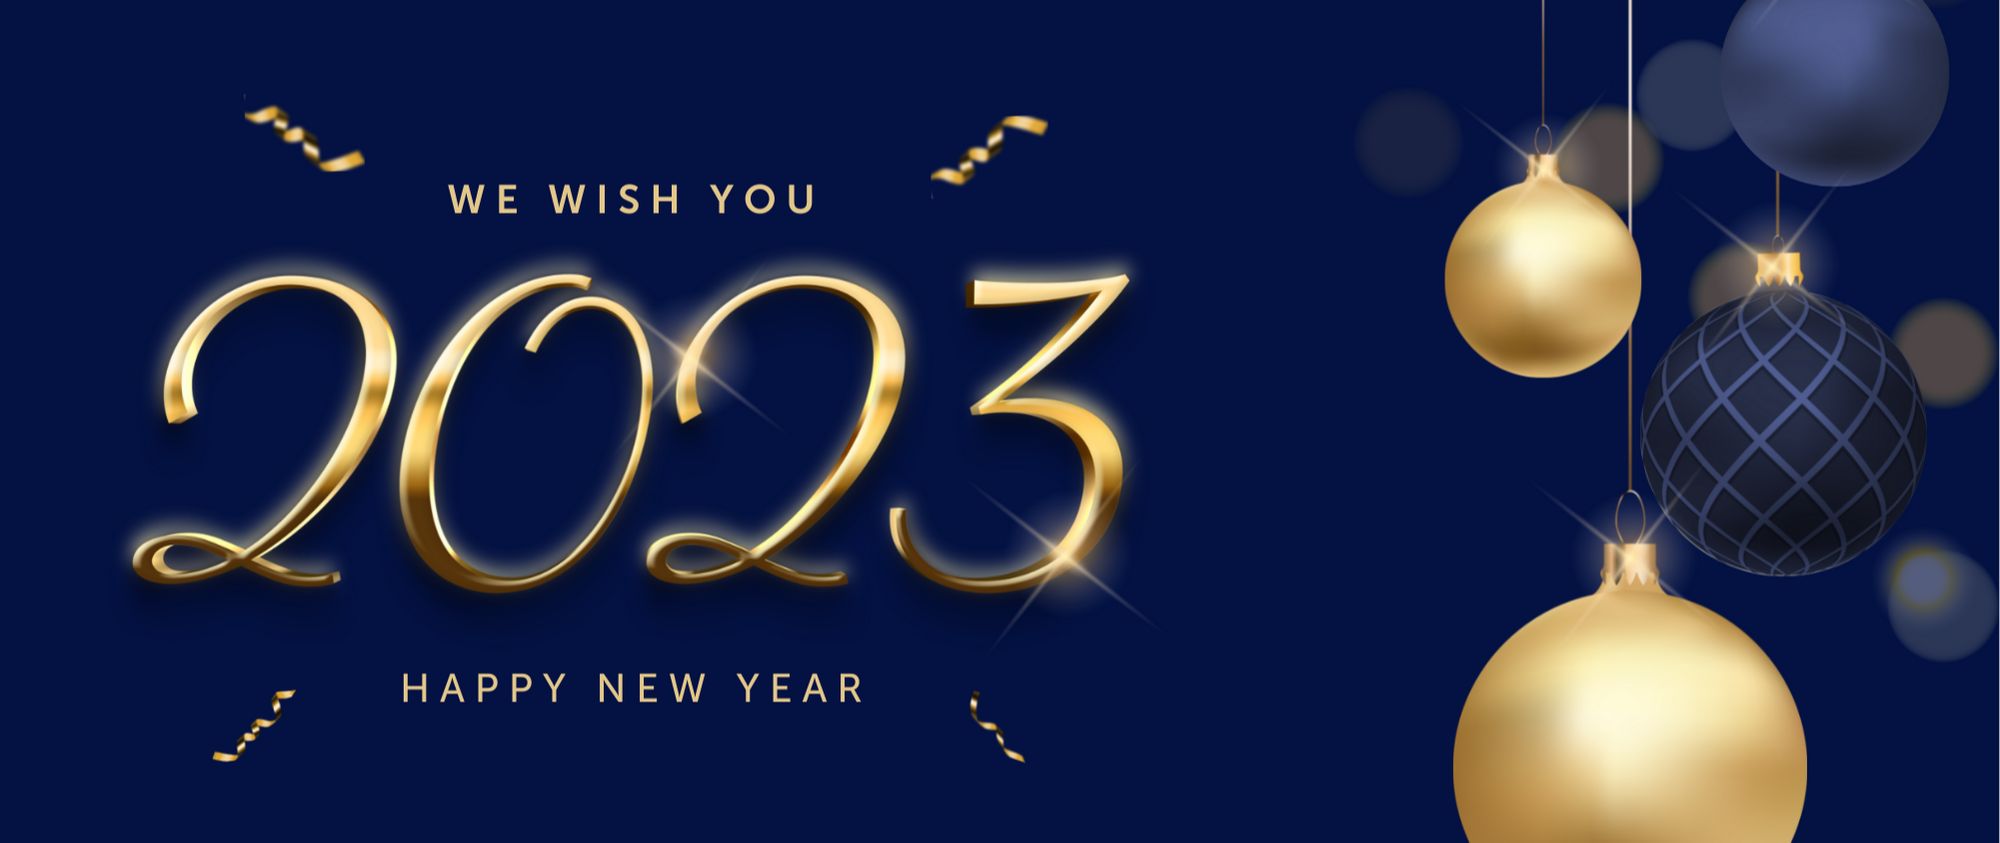 澳洲联邦大学祝您2023新年快乐!